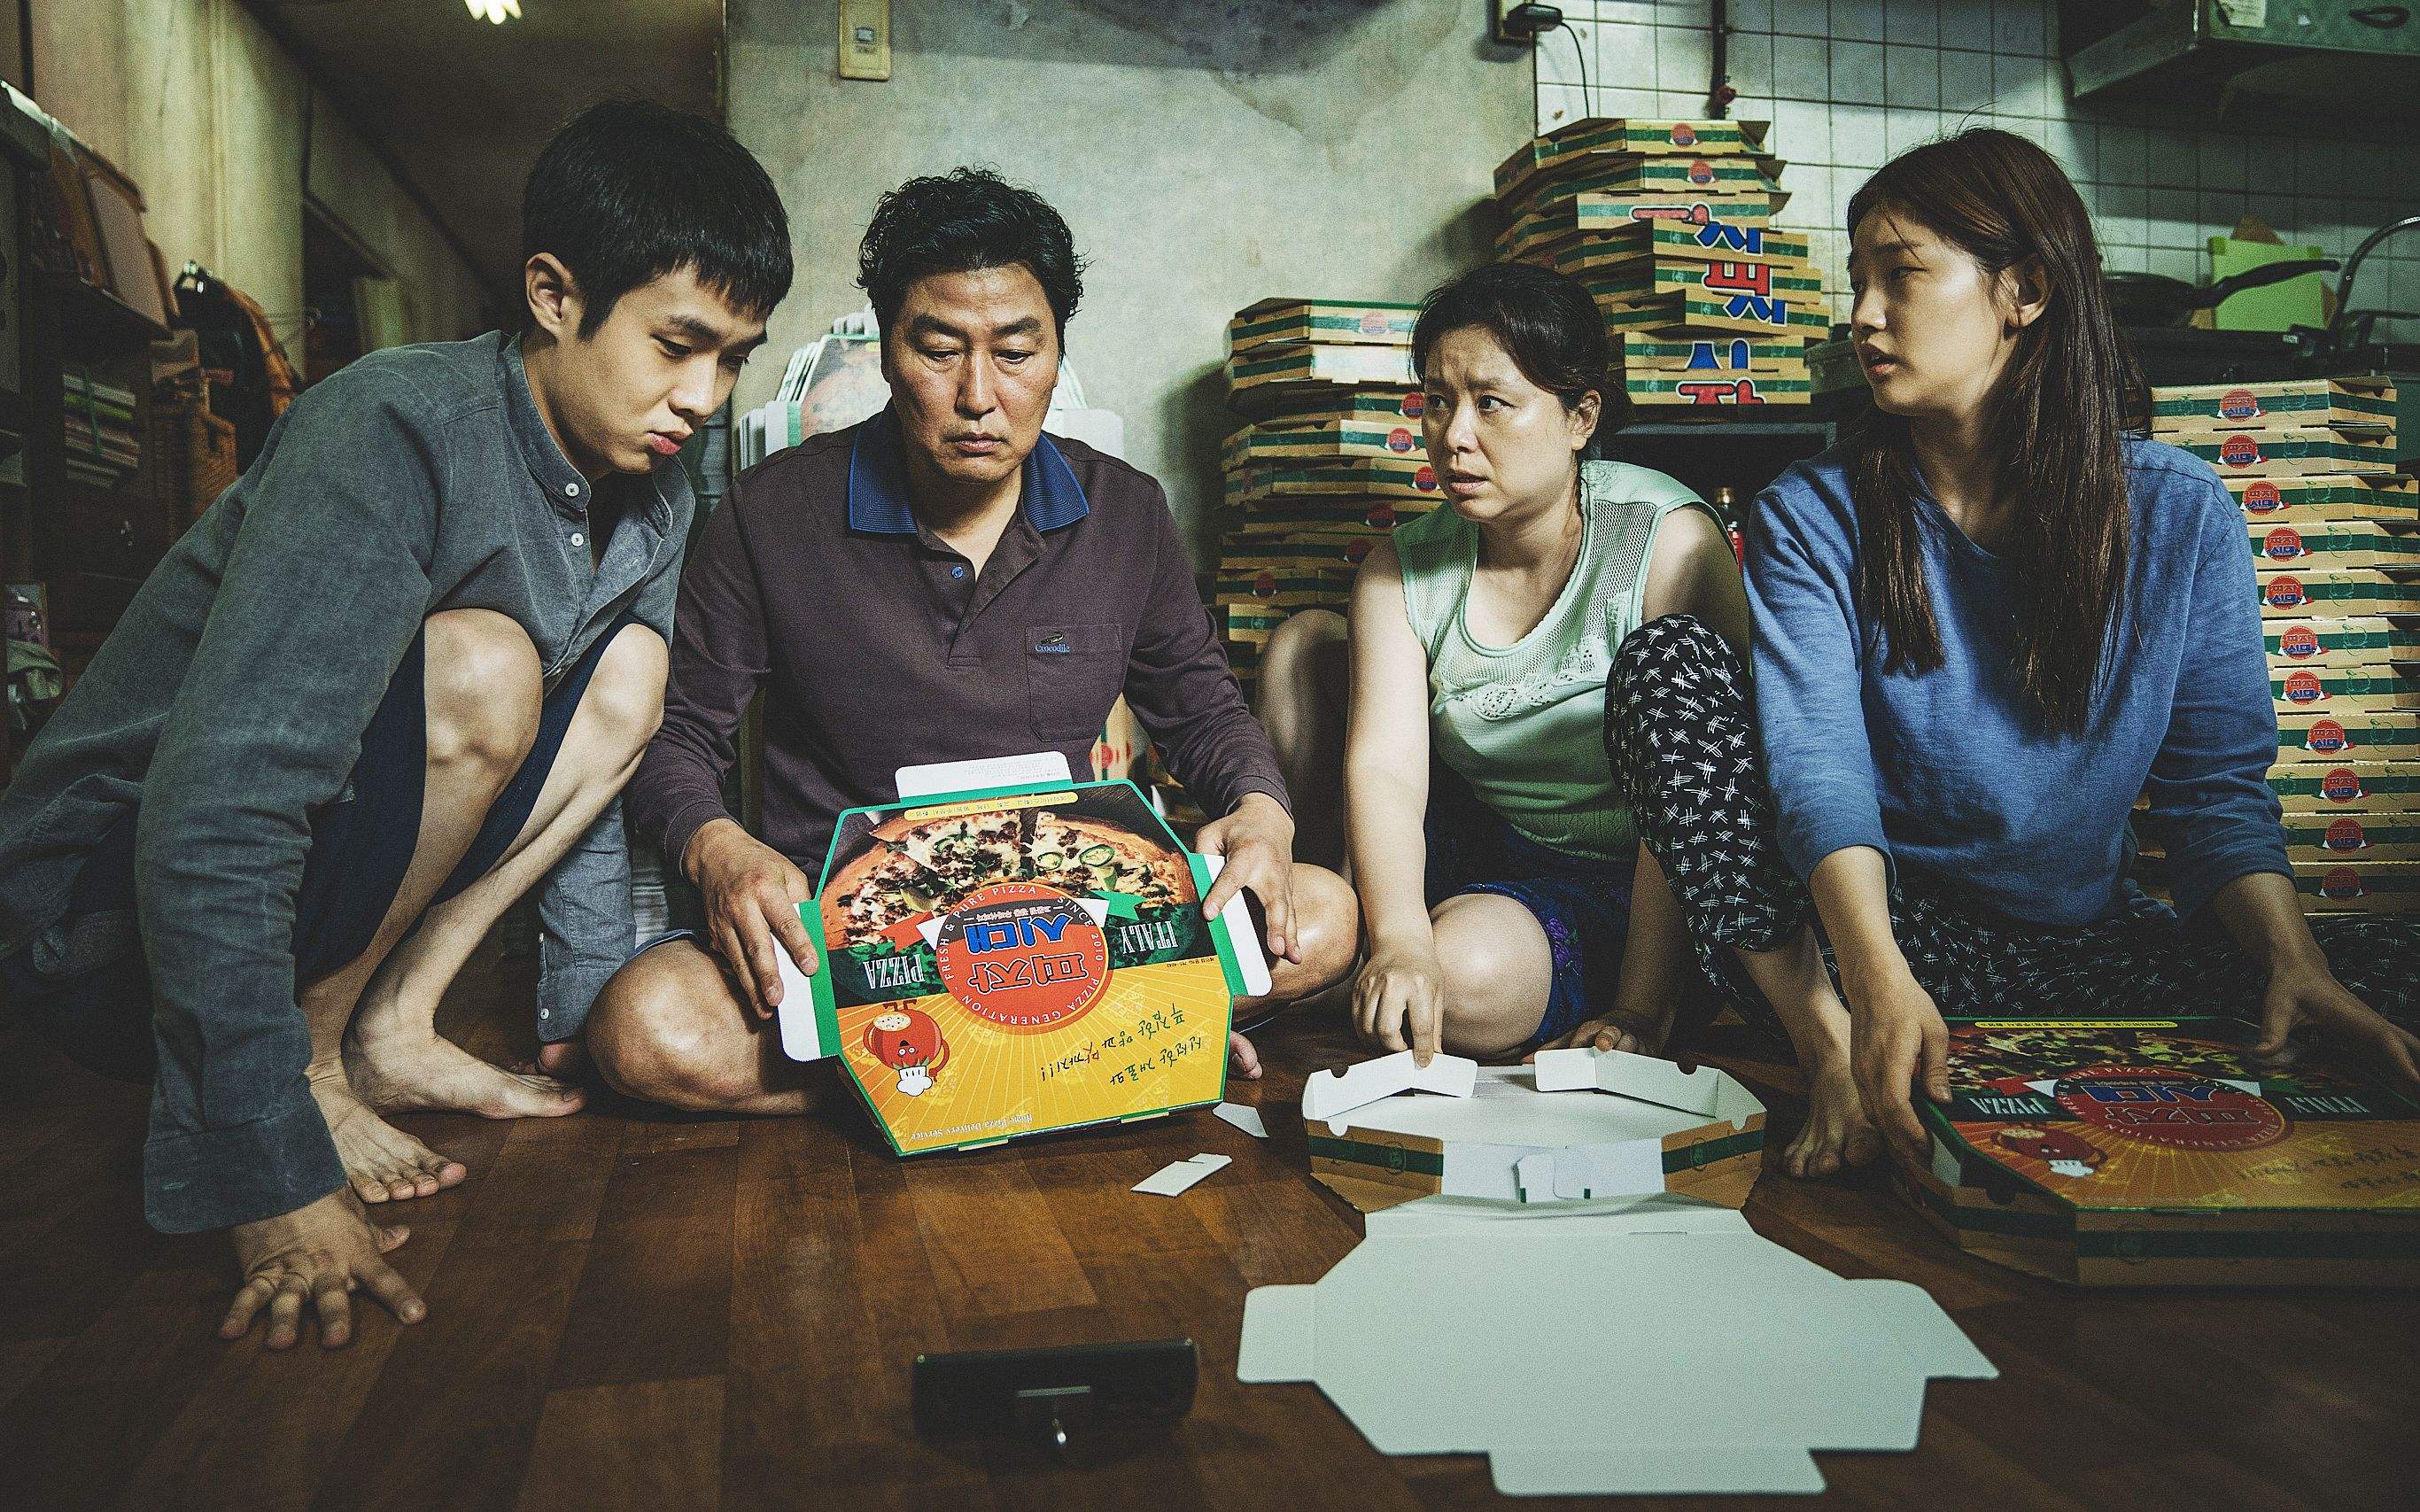 韩国电影《寄生虫》获奥斯卡四项大奖后 成第三大卖座电影